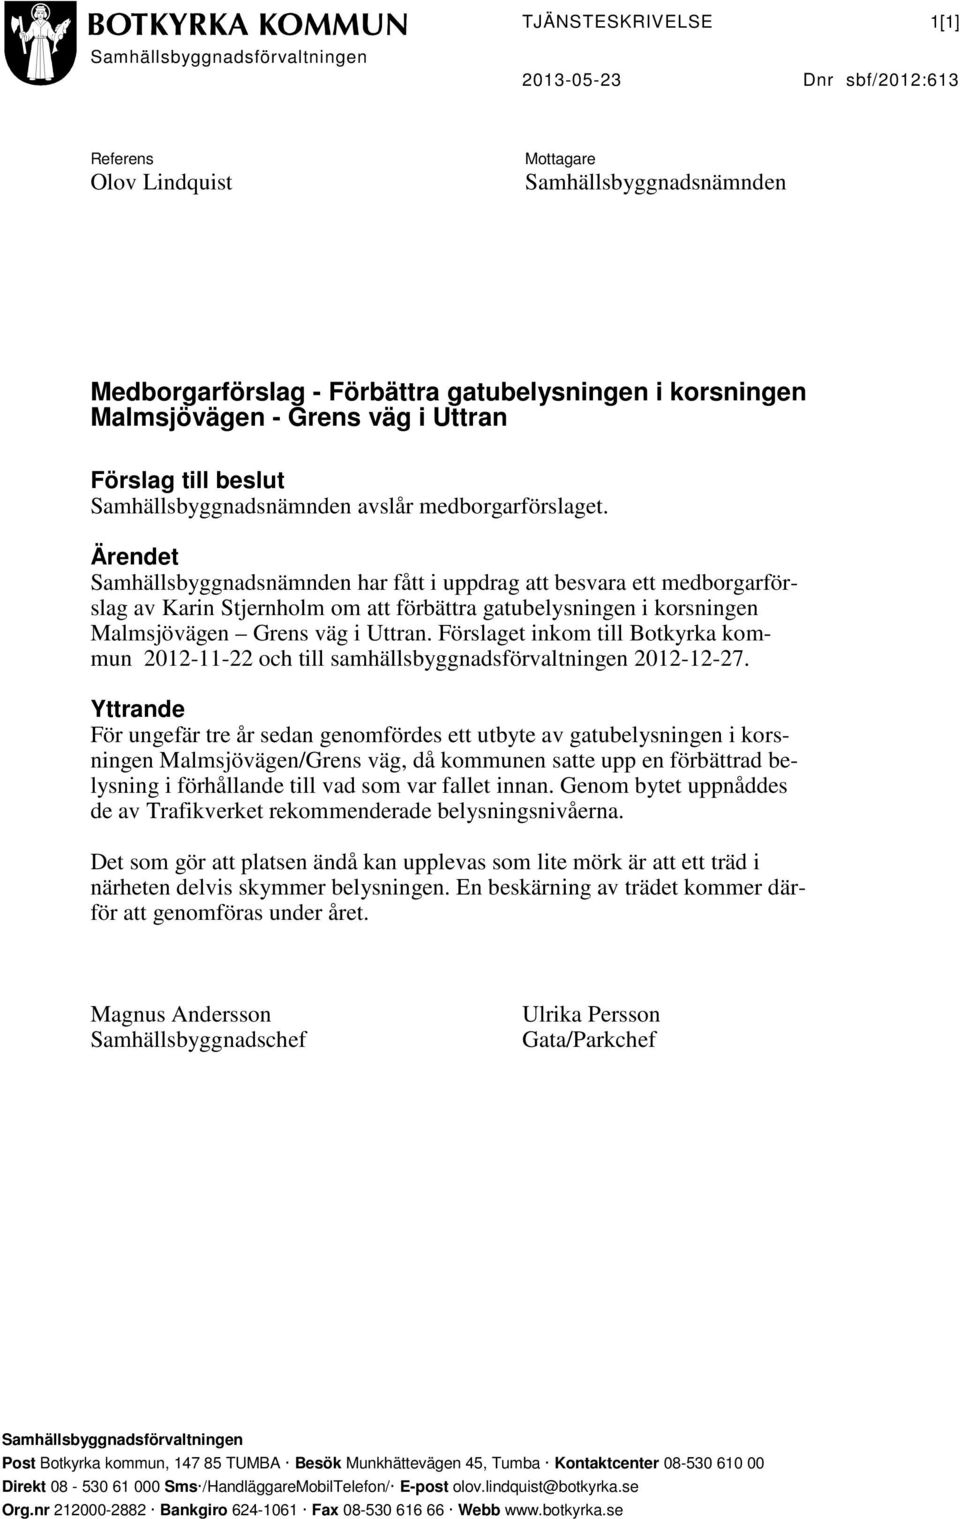 Ärendet Samhällsbyggnadsnämnden har fått i uppdrag att besvara ett medborgarförslag av Karin Stjernholm om att förbättra gatubelysningen i korsningen Malmsjövägen Grens väg i Uttran.